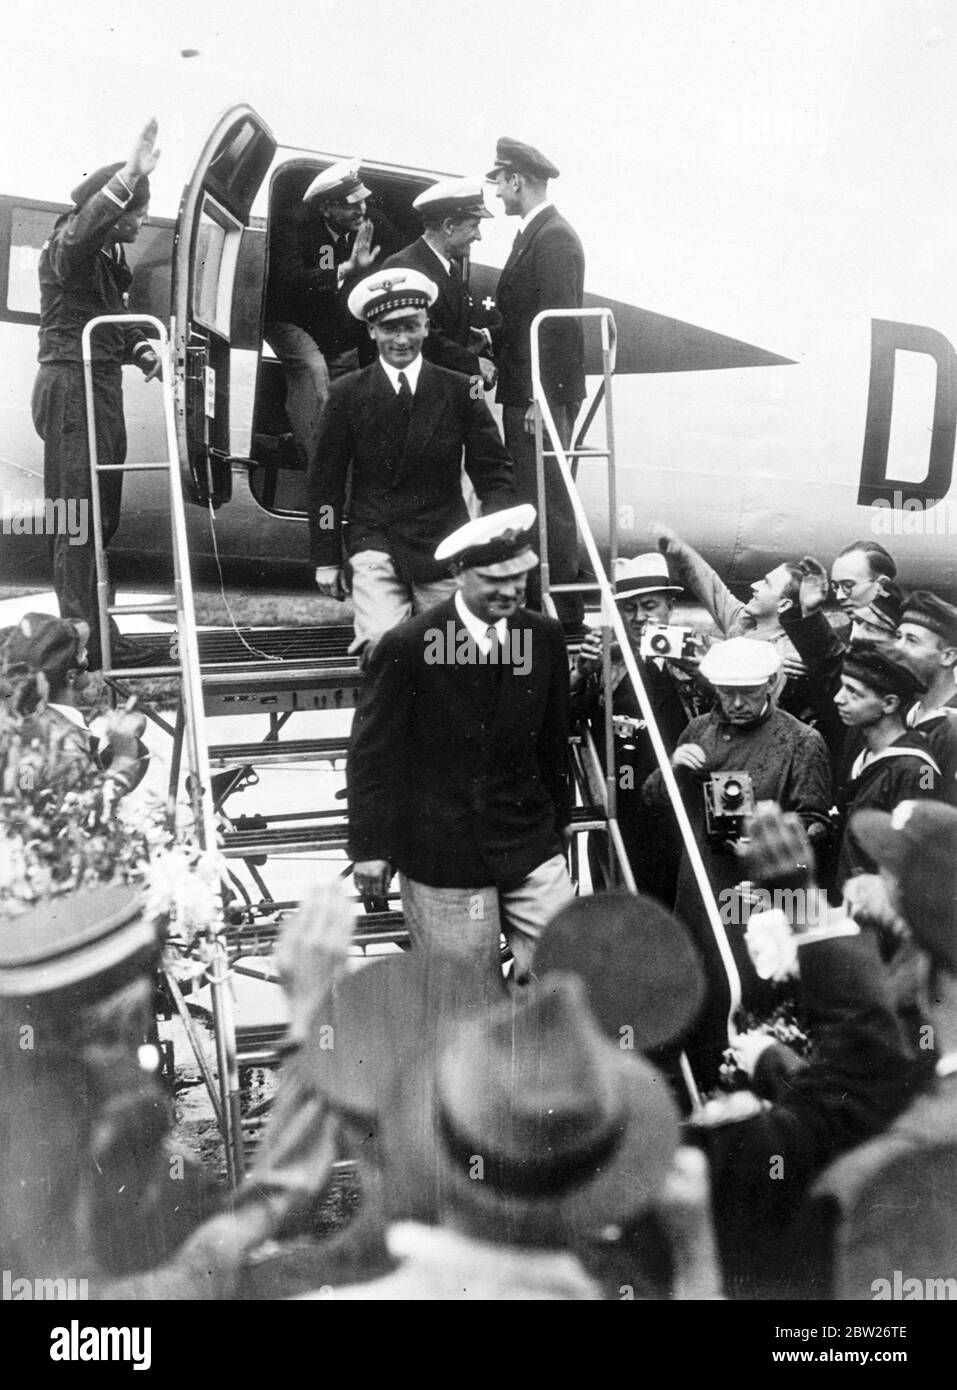 L'équipage allemand a accueilli chez lui après un vol Atlantique record. L'avion de ligne allemand 'Brandenburg' qui avait volé de Berlin à New York en 24 heures 56 minutes, a atterri à l'aérodrome de Tempelhof, Berlin, après leur vol de retour de 19 heures 54 minutes. Ce vol a été le plus rapide de New York à Berlin et a facilement battu le record établi par le rond-point mondial Wiley Post en 1933, de 24 heures 45 minutes. L'équipage de la machine, le capitaine Henke, le capitaine von Moreau, l'opérateur radio Kober et le mécanicien Dierberg, ont reçu un accueil formidable, et ont été reçus par Gene au ministère de l'Air Banque D'Images